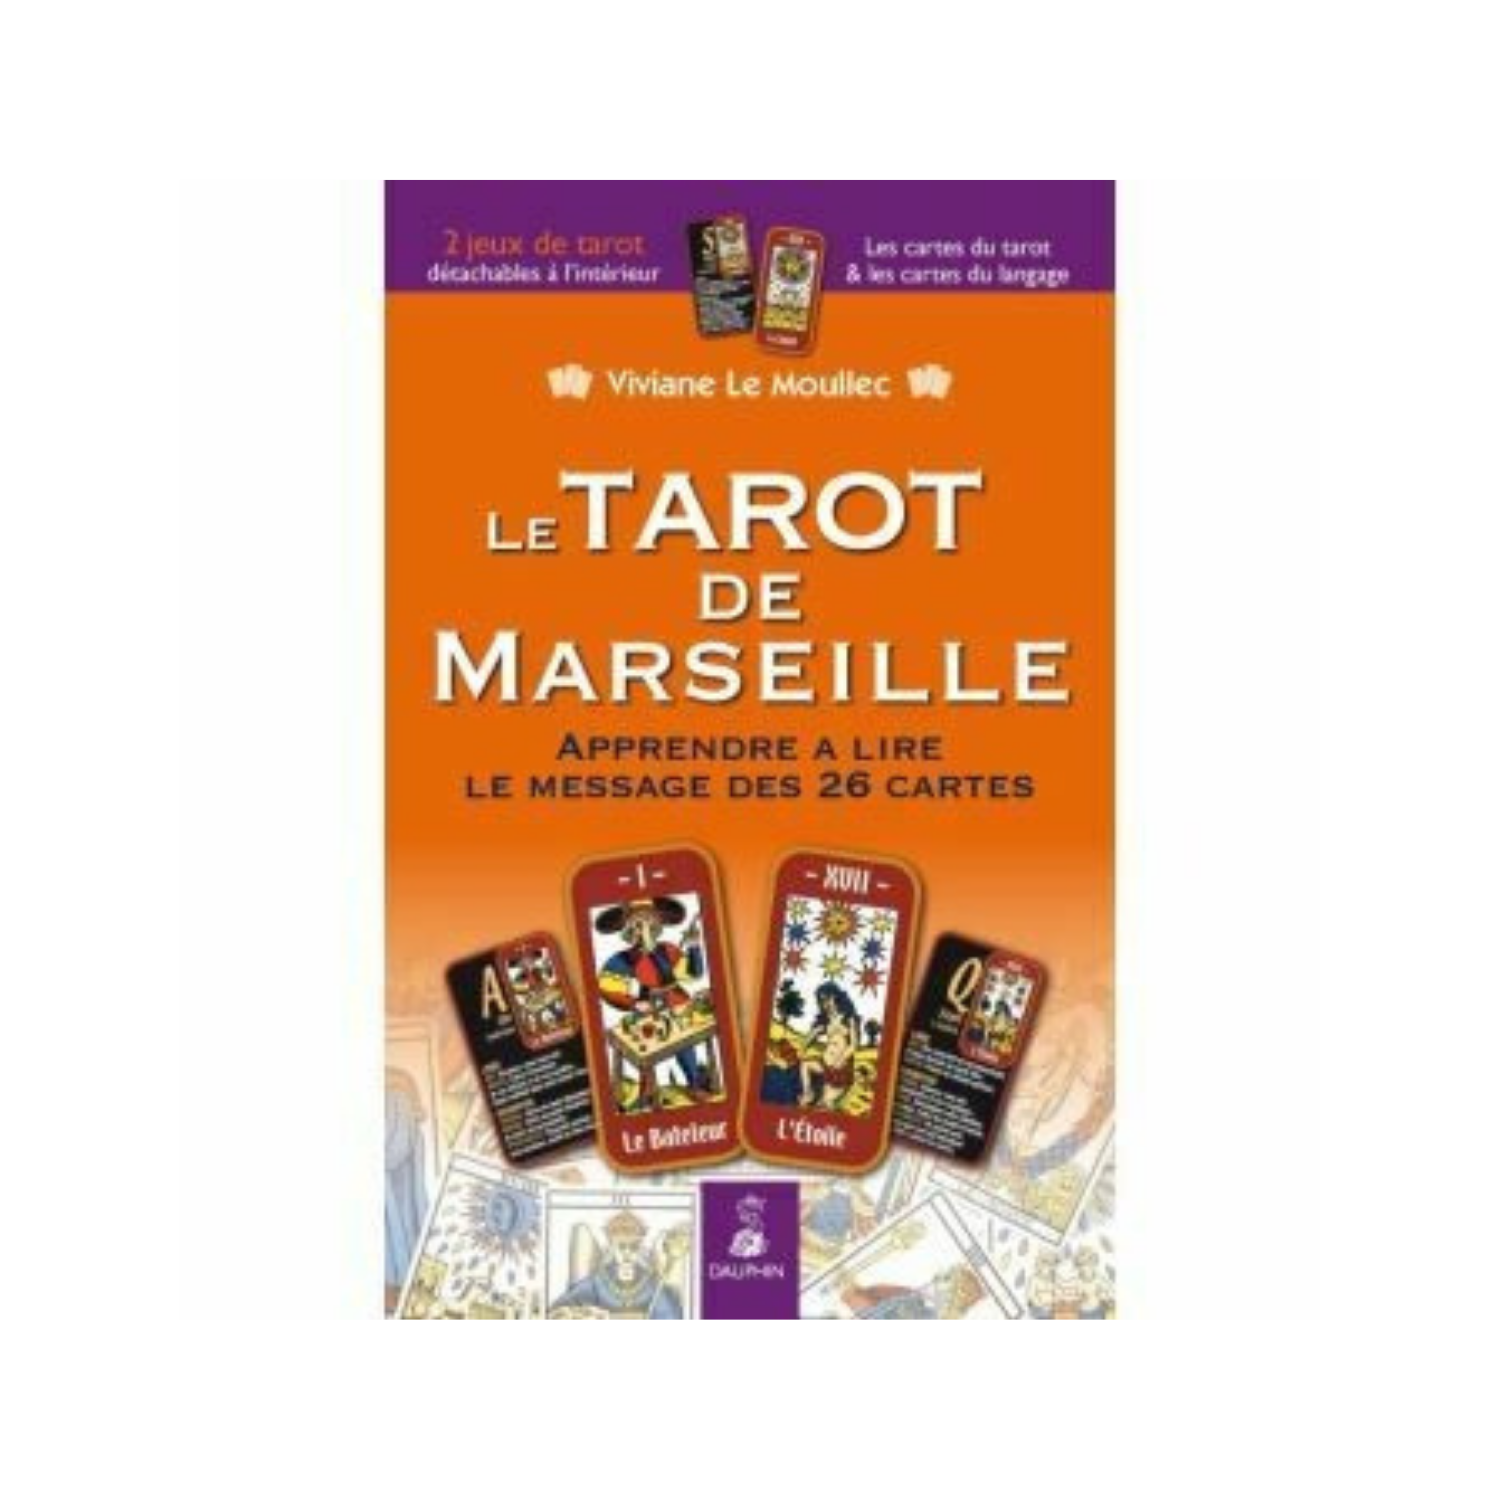 Le Tarot de Marseille, Apprendre a lire le message des 26 cartes